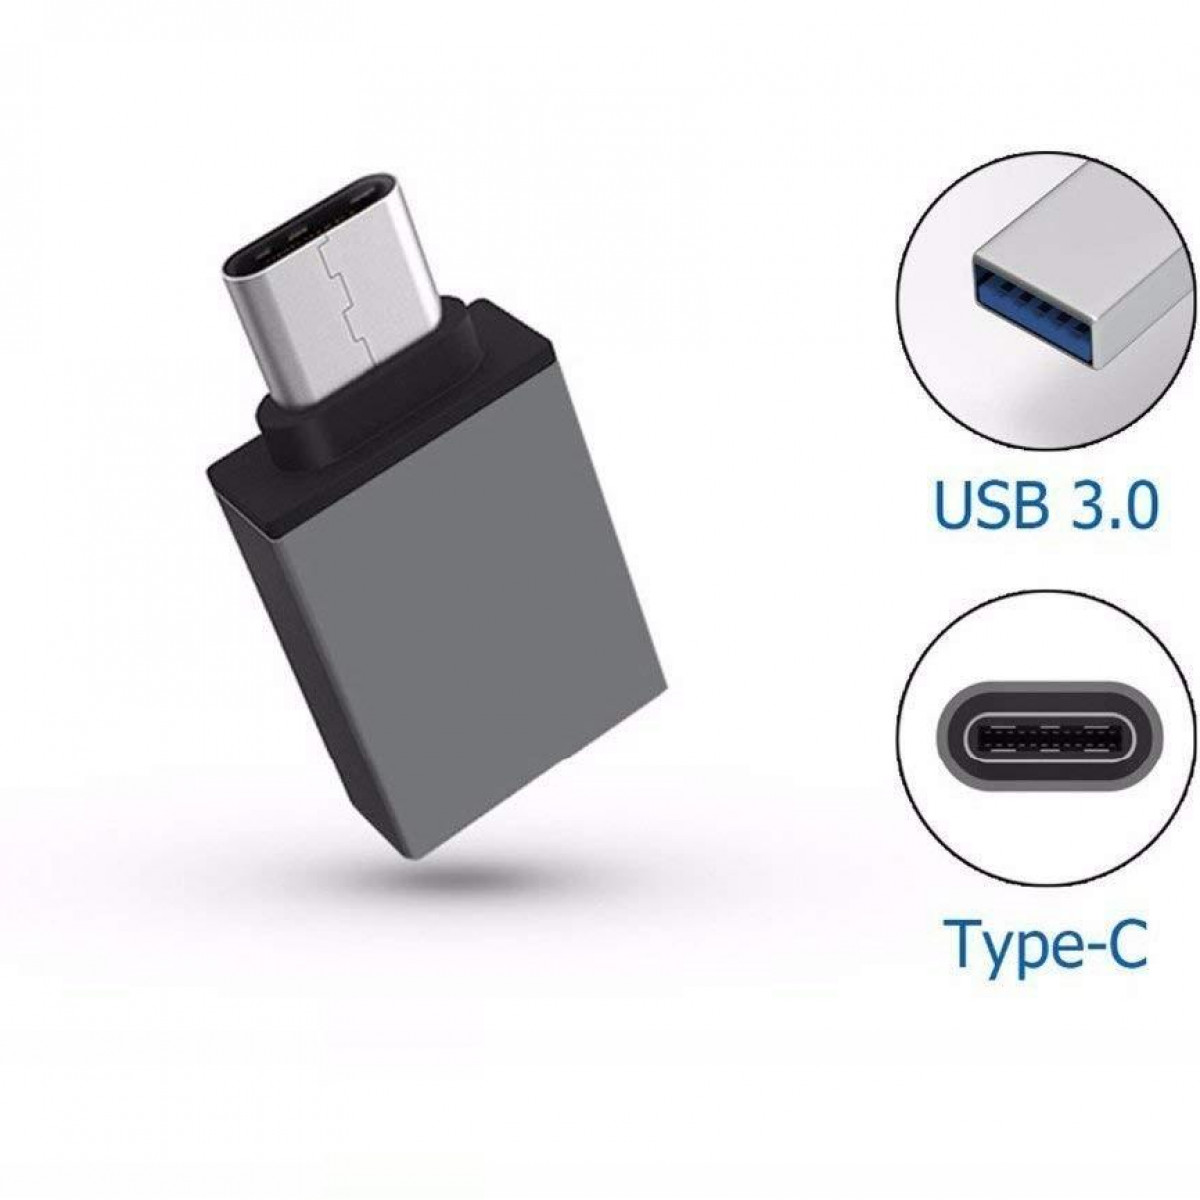 INF USB-C zu zu 3.0 USB 3.0 Adapter High-Speed USB Adapter USB-C